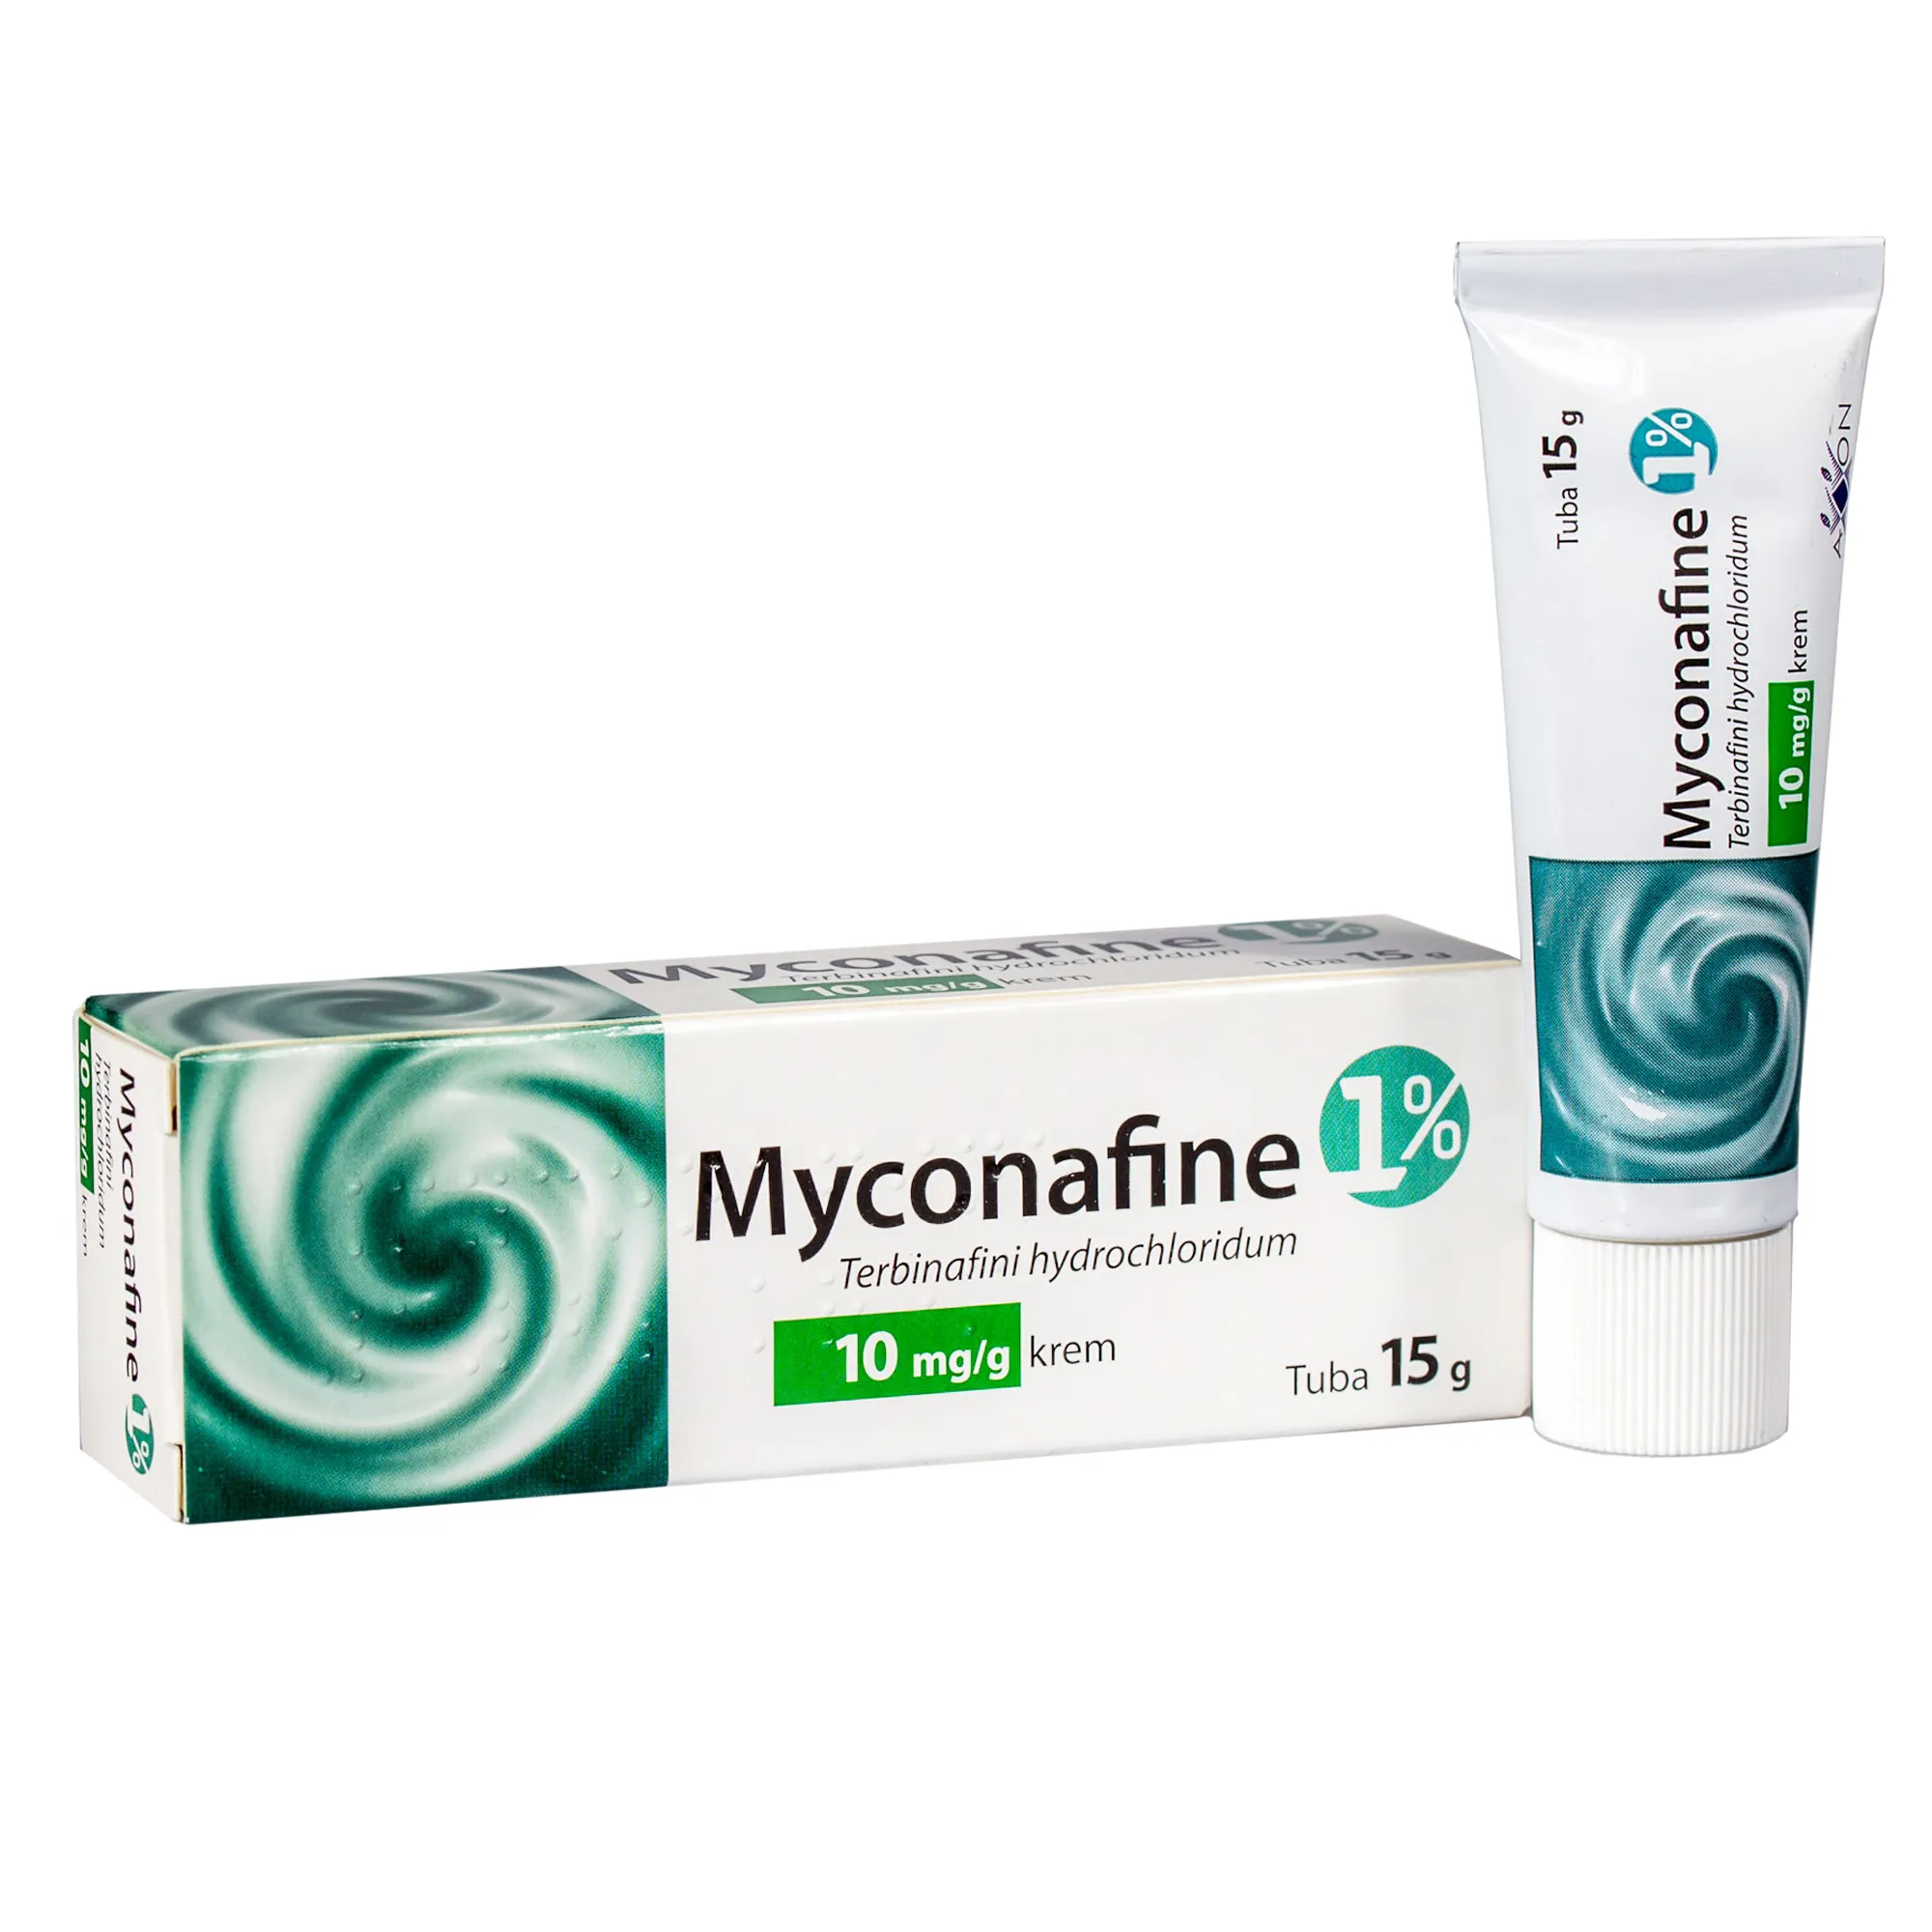 Myconafine 1%, krem przeciwgrzybiczy, 15 g 